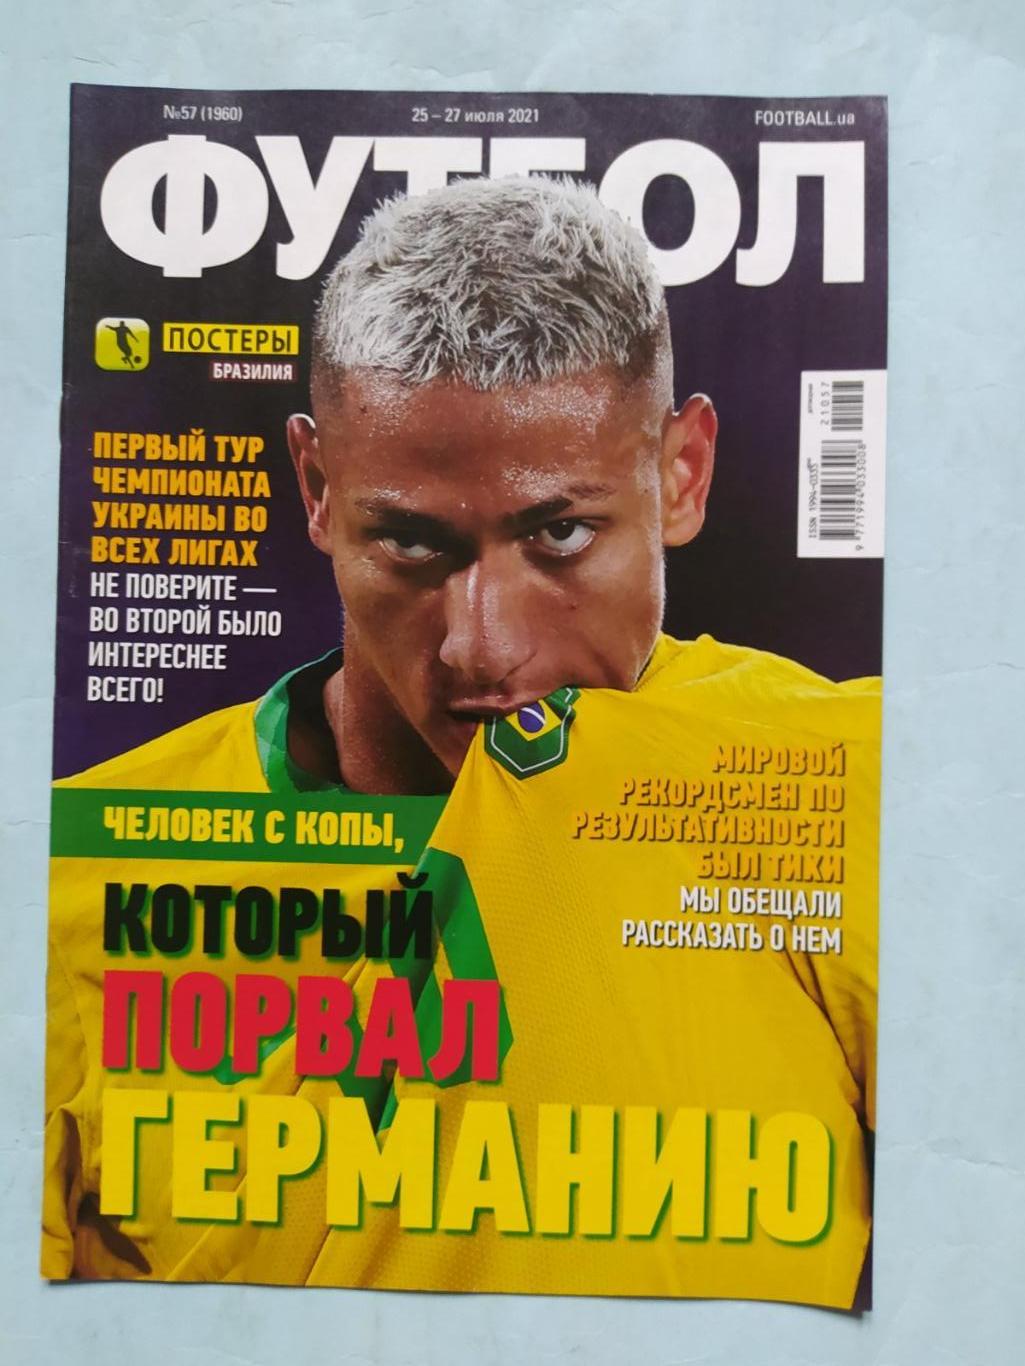 Еженедельник Футбол Украина № 57 за 2021 год